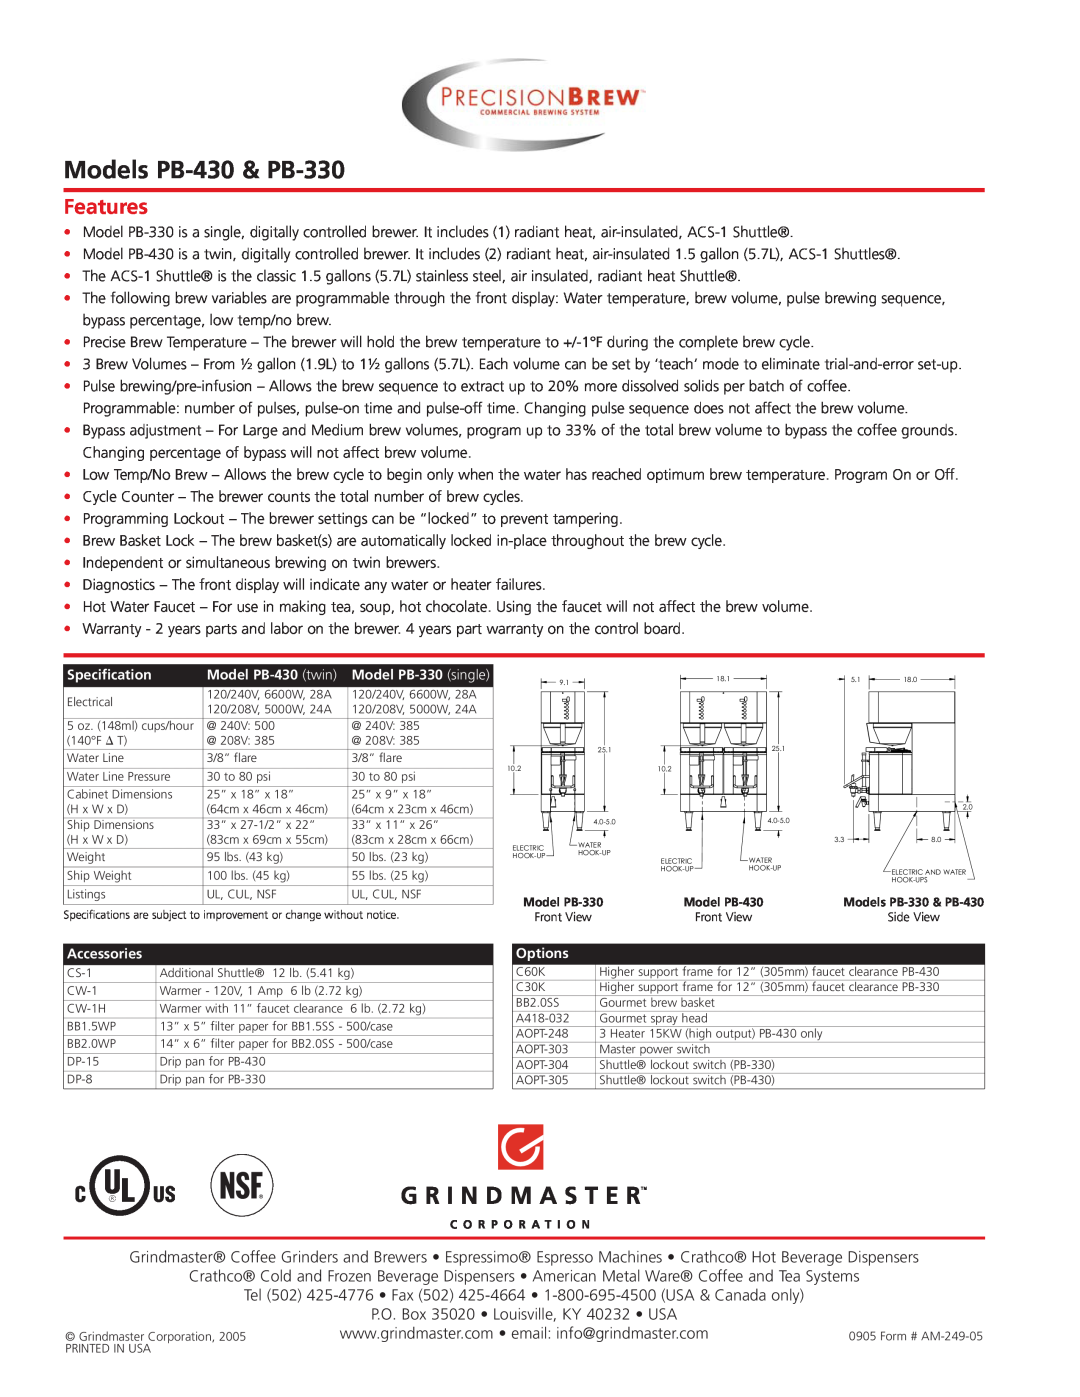 Grindmaster manual Models PB-430& PB-330, Features 